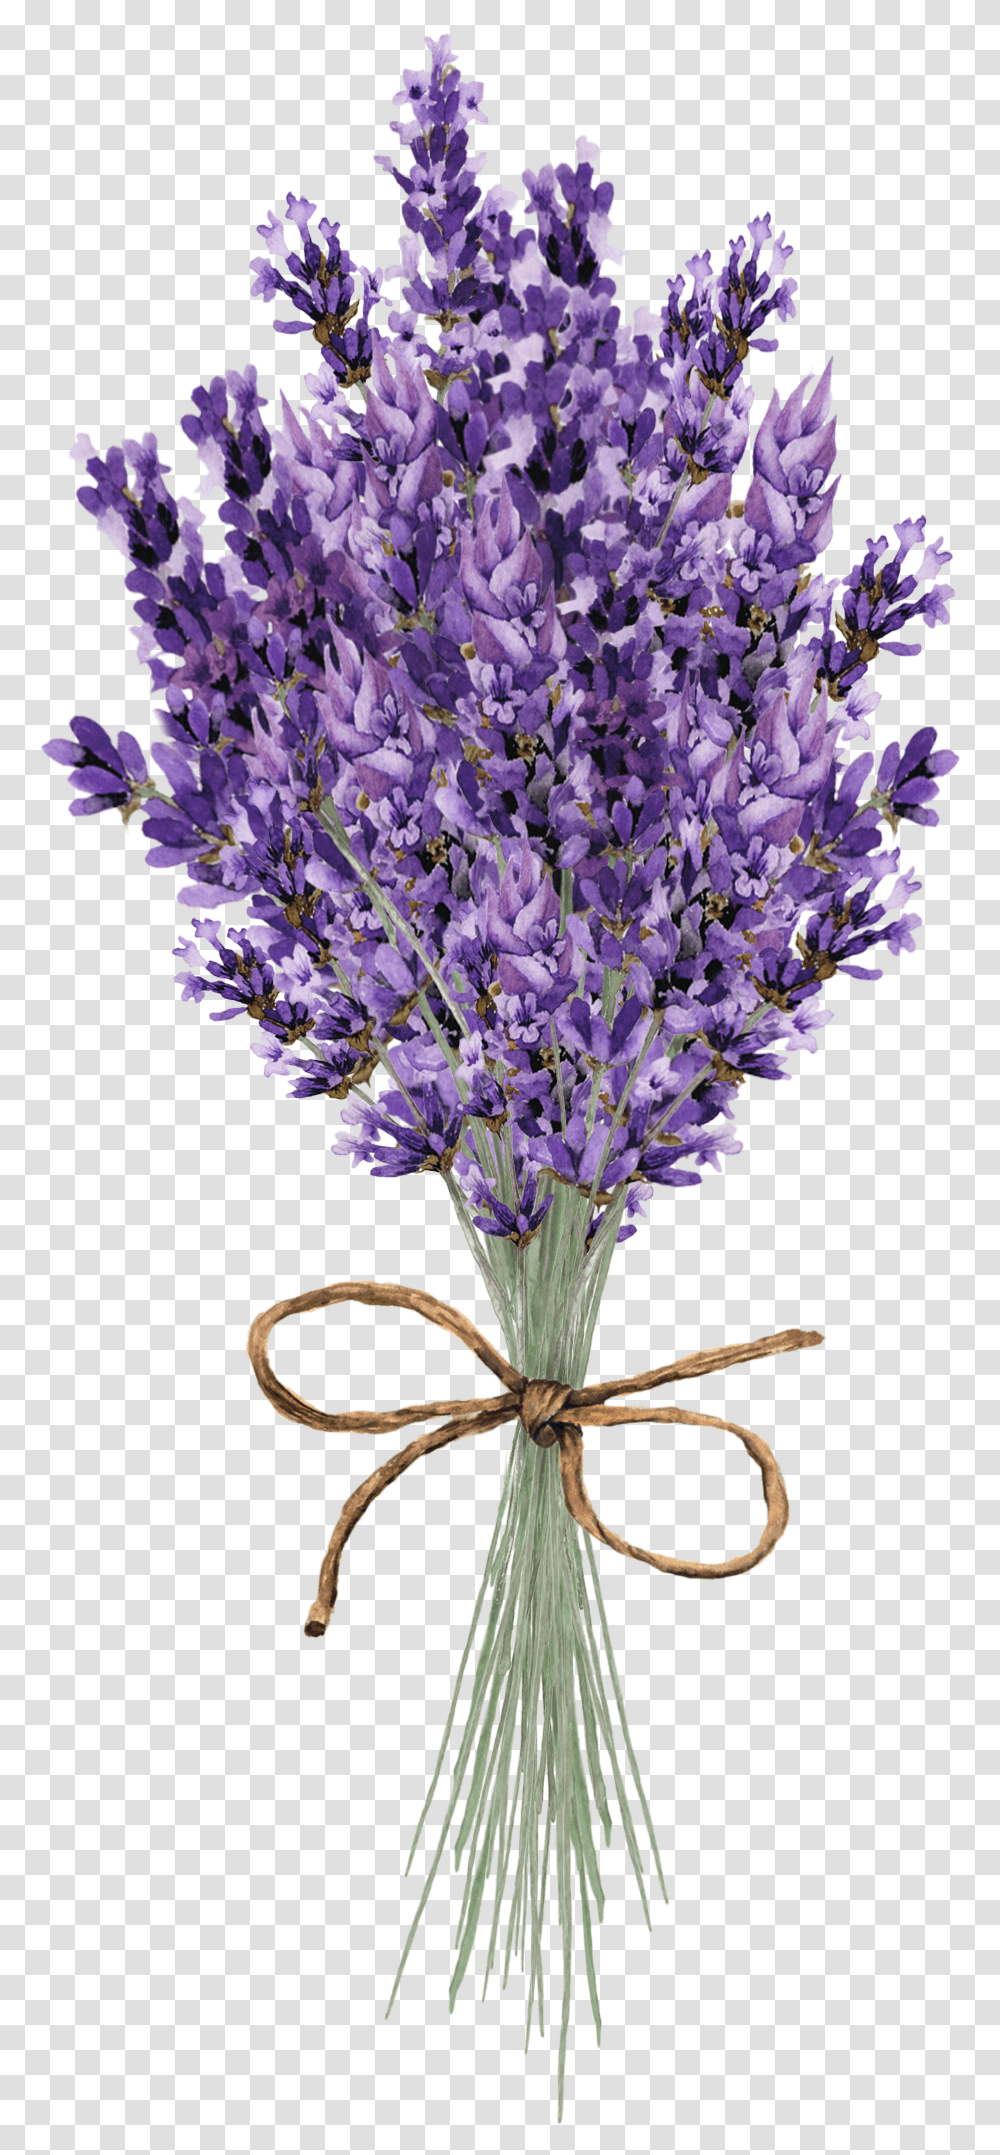 Clip Art Lavender Flower Lavender Flower Paintings, Plant, Blossom, Petal, Agapanthus Transparent Png